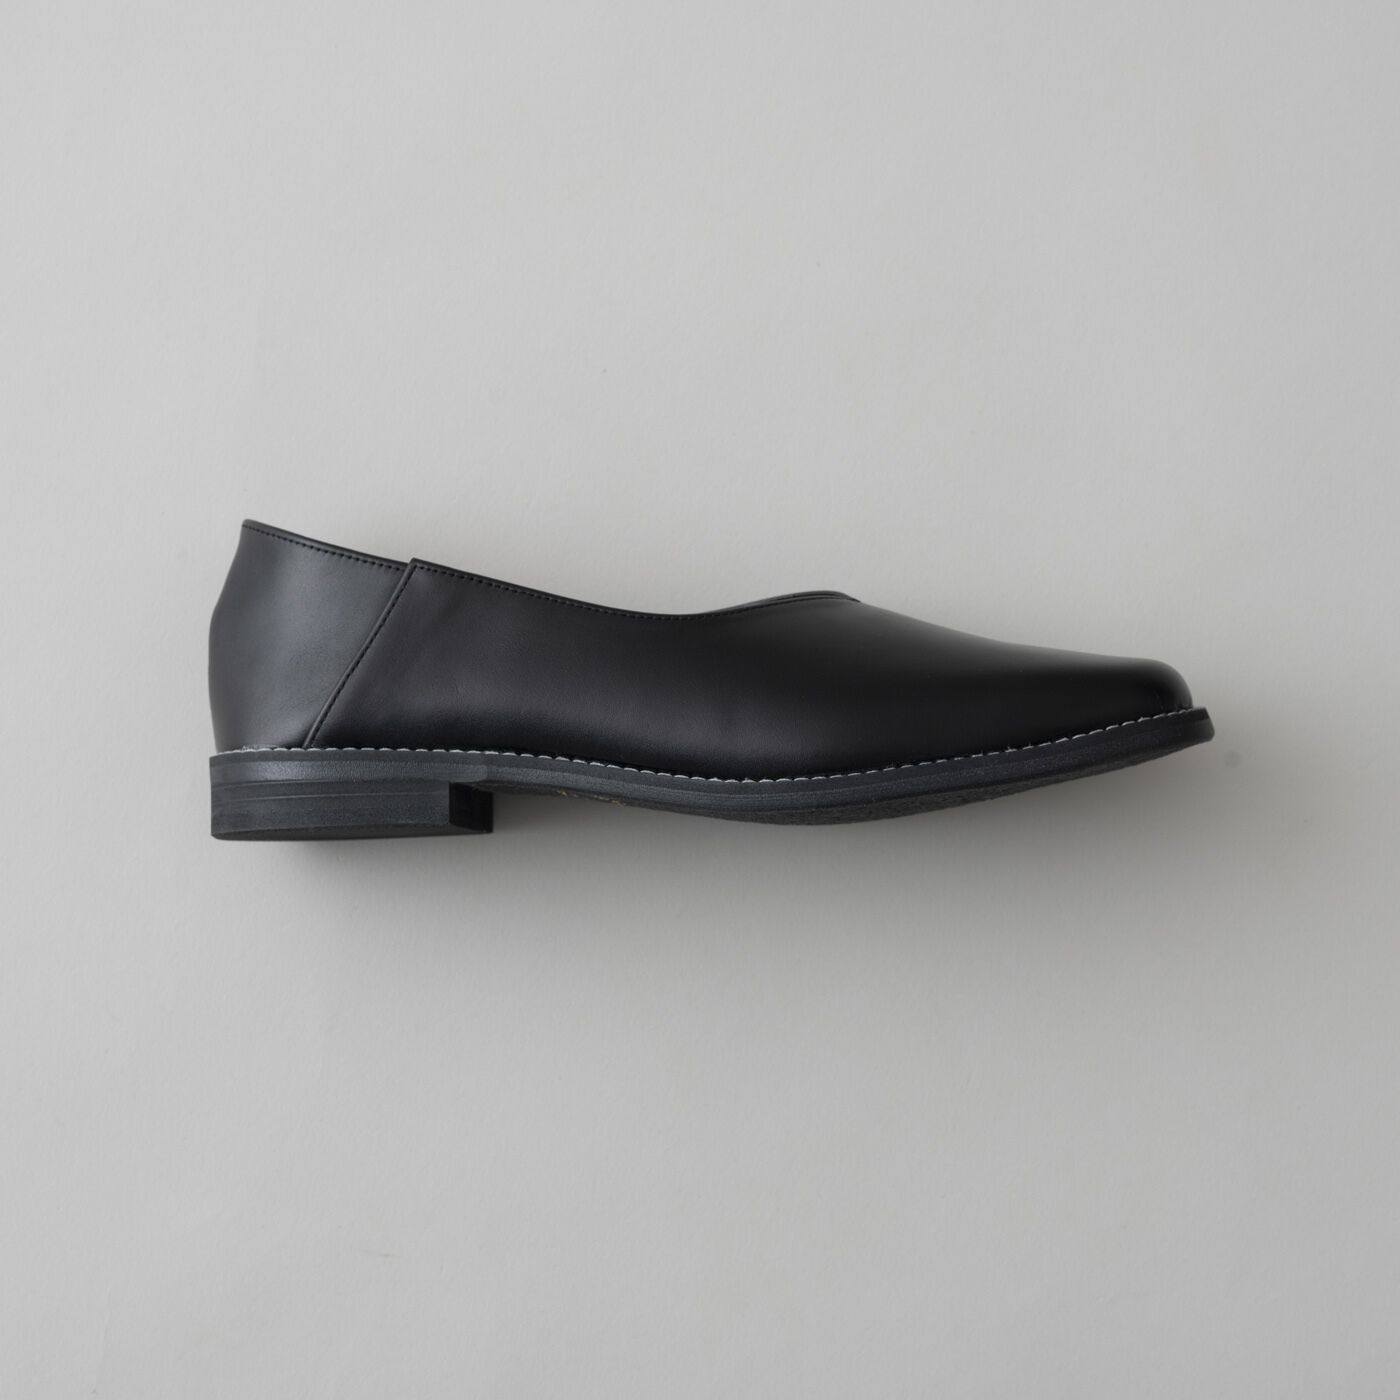 ＆Stories|長田の靴メーカーと作った　職人本革のスクエアノーズシューズ〈ブラック〉|美しいフォルムと、スニーカーのような履き心地は、職人さんのこだわりのたまもの。